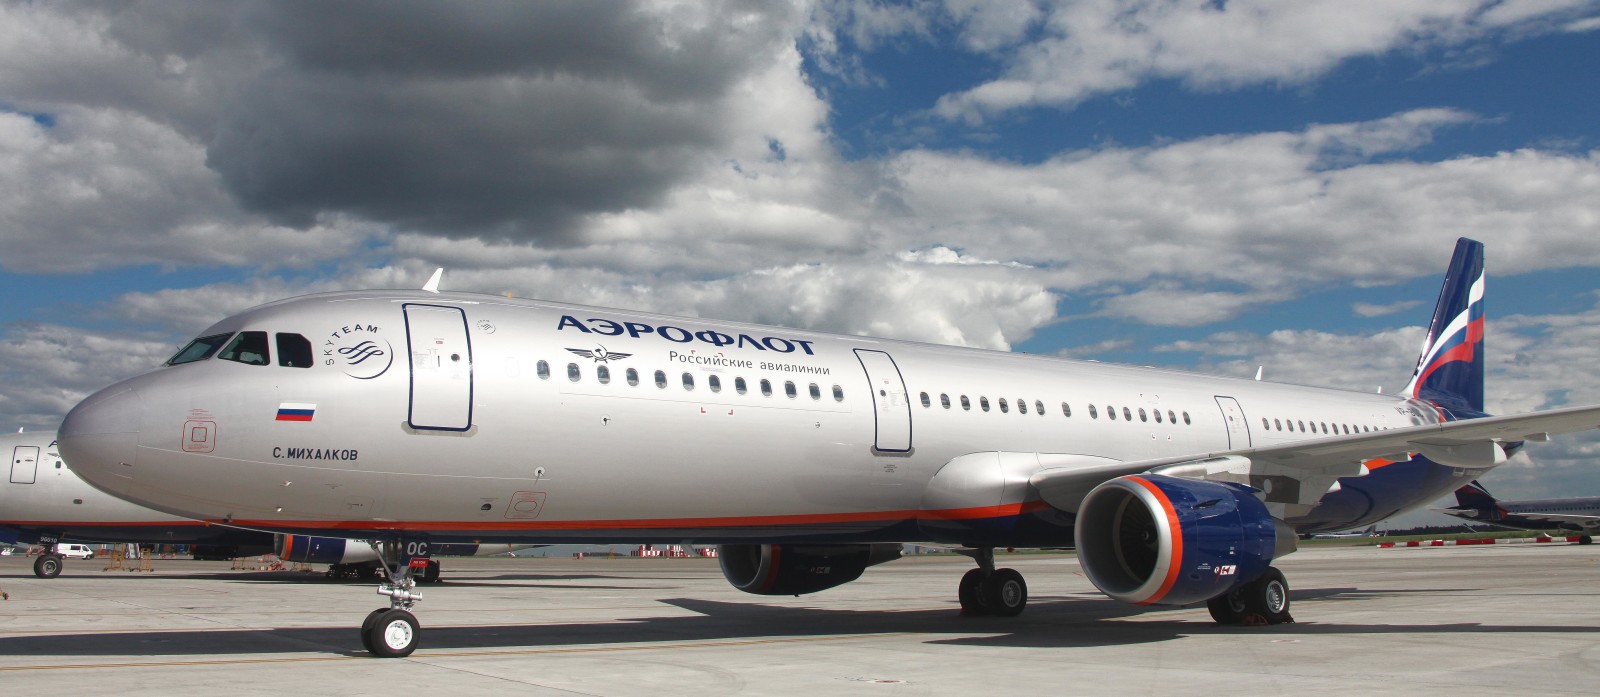 langit, awan, pesawat, Aeroflot, Airbus, A-321